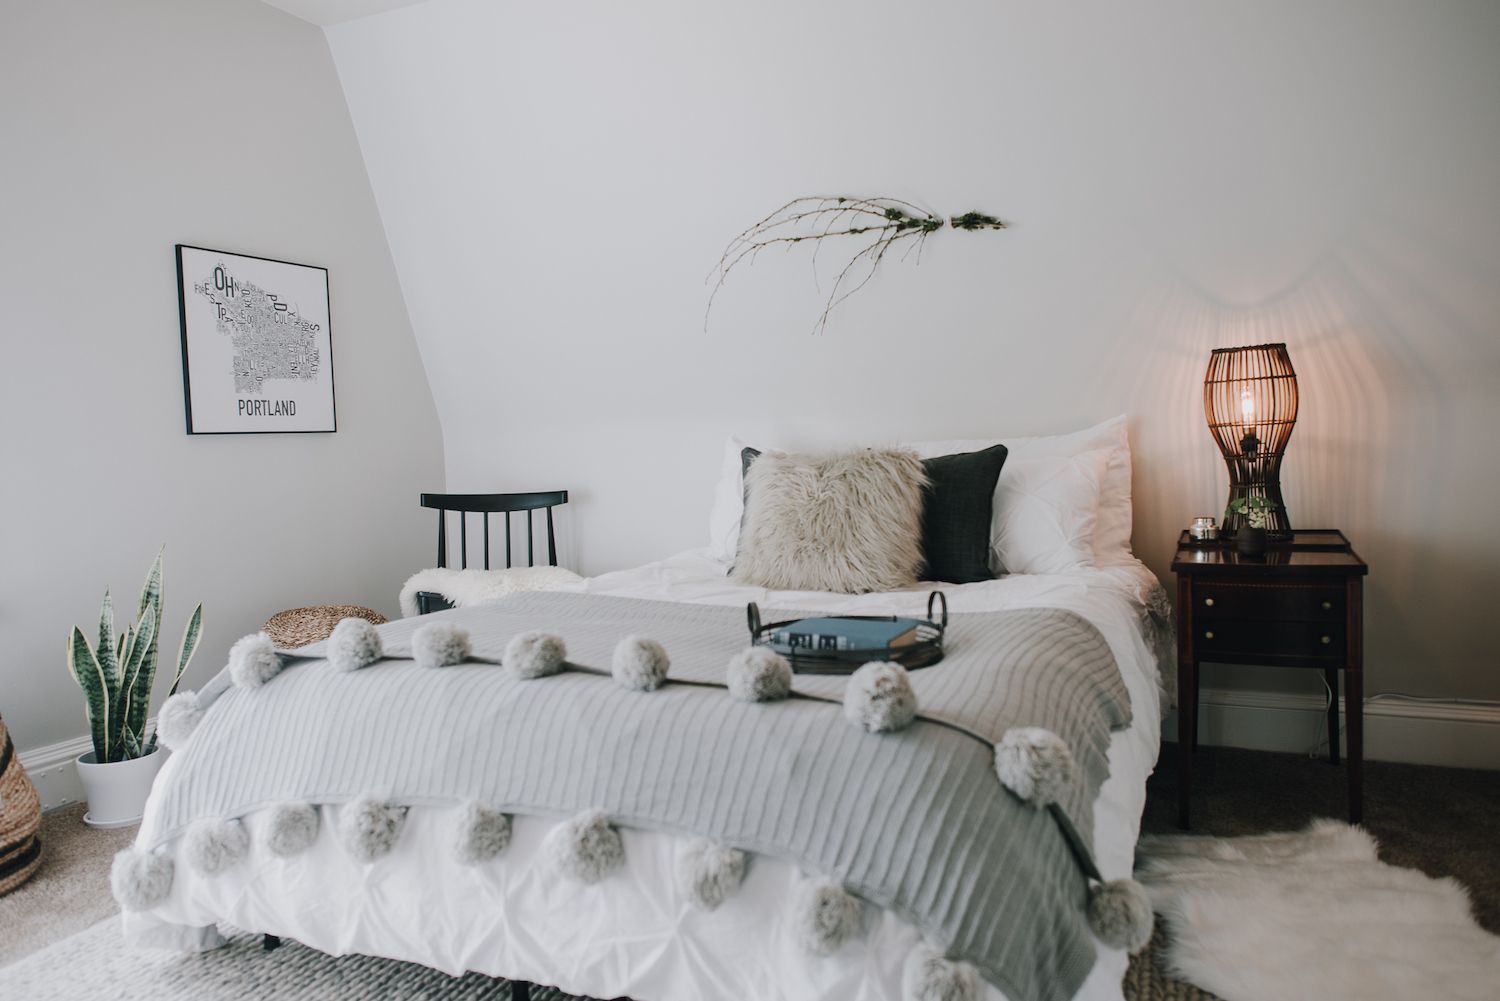 chambre moderne avec des textures douces : oreiller en fourrure, couverture grise avec des pom pons sur la fin. Cool tones